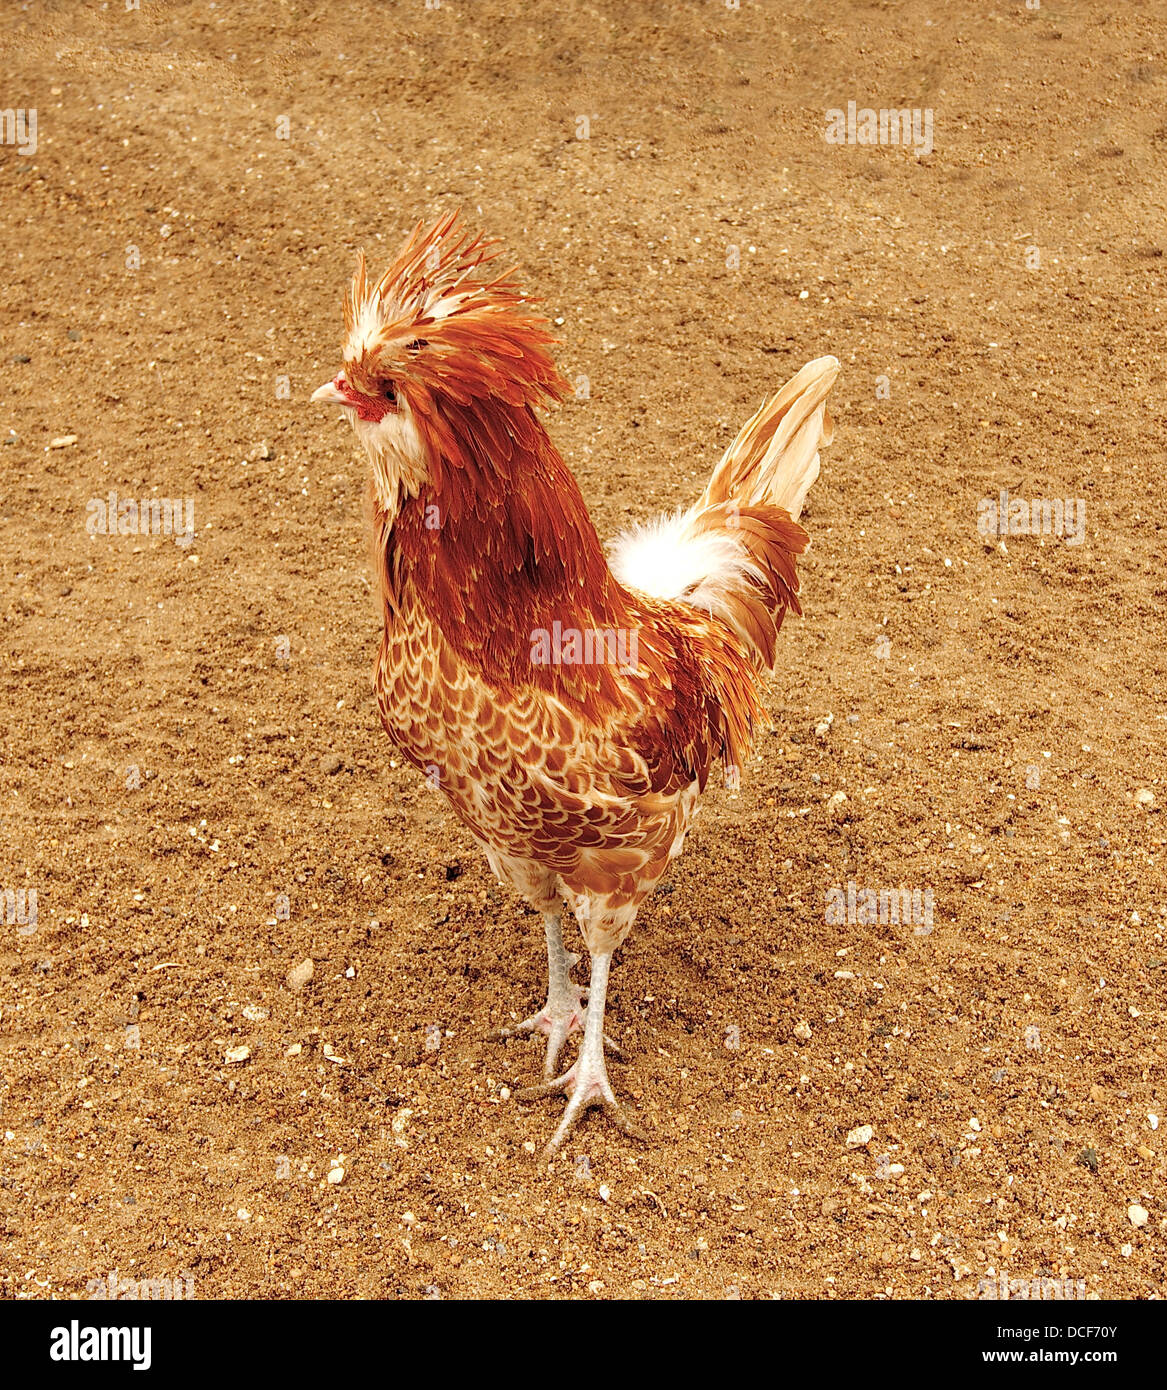 Gallus gallus domesticus, buff laced polish chicken breed. Stock Photo